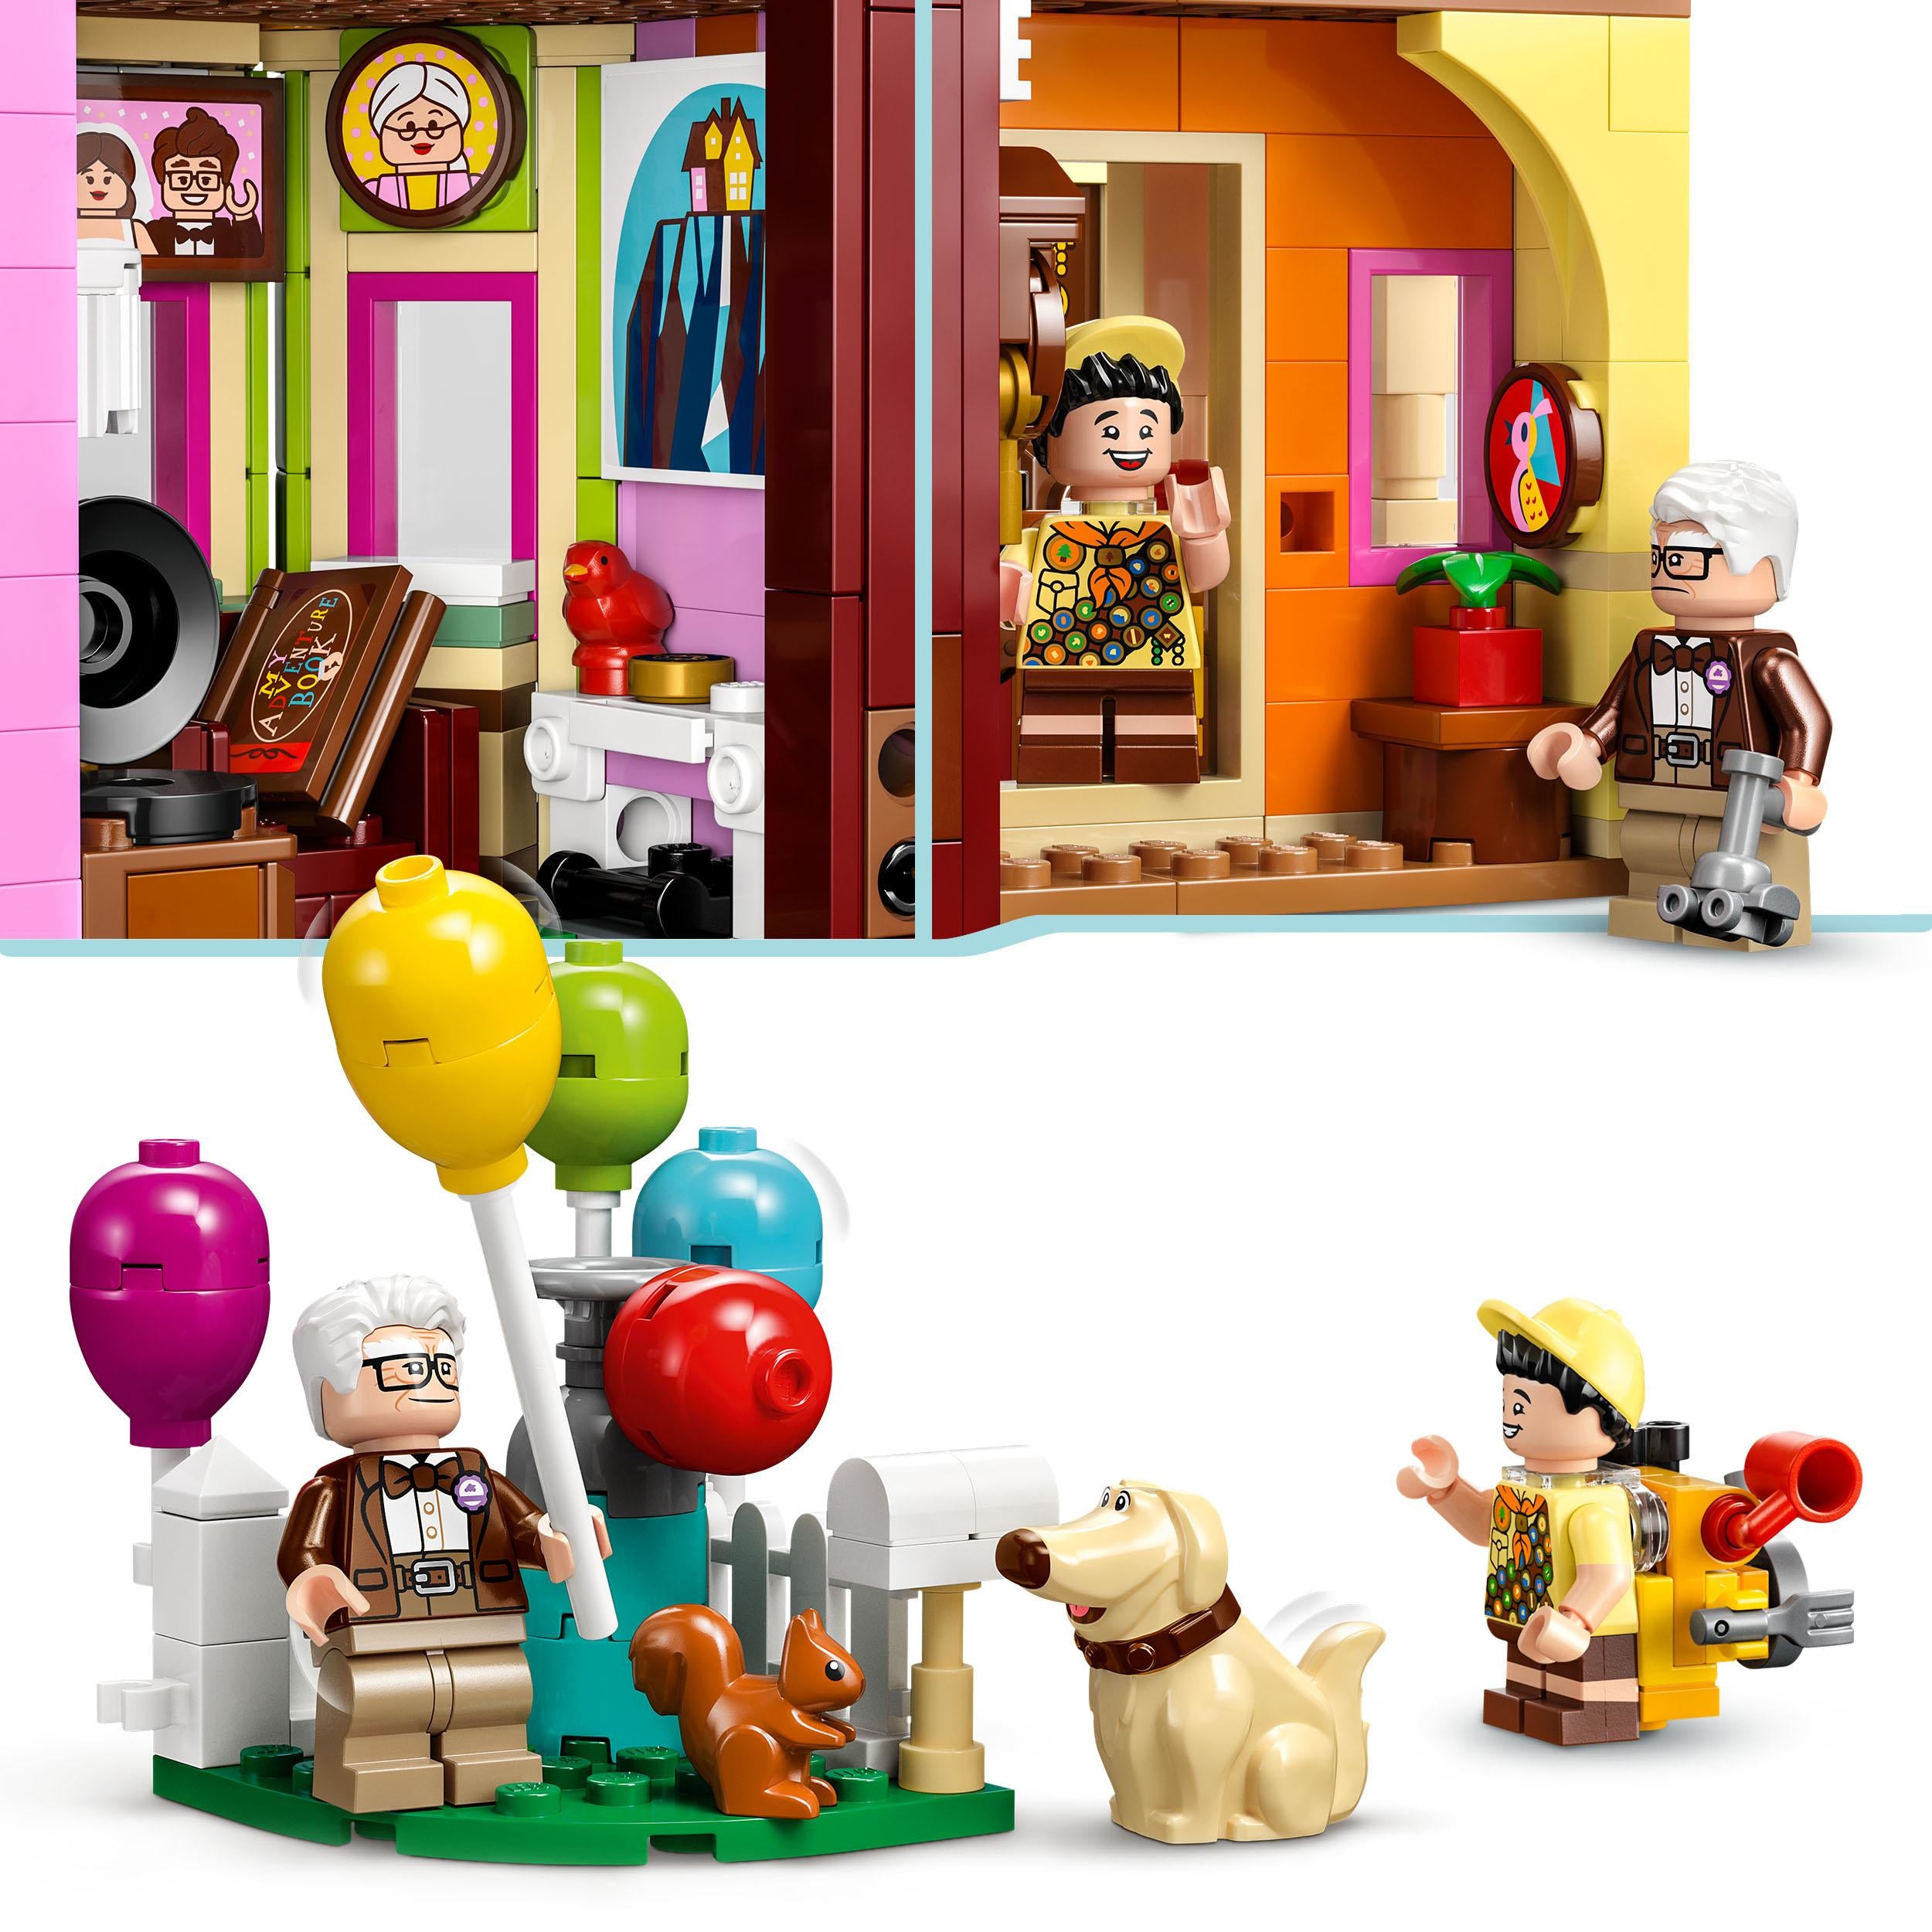 43217 - LEGO - Disney - Casa di Up